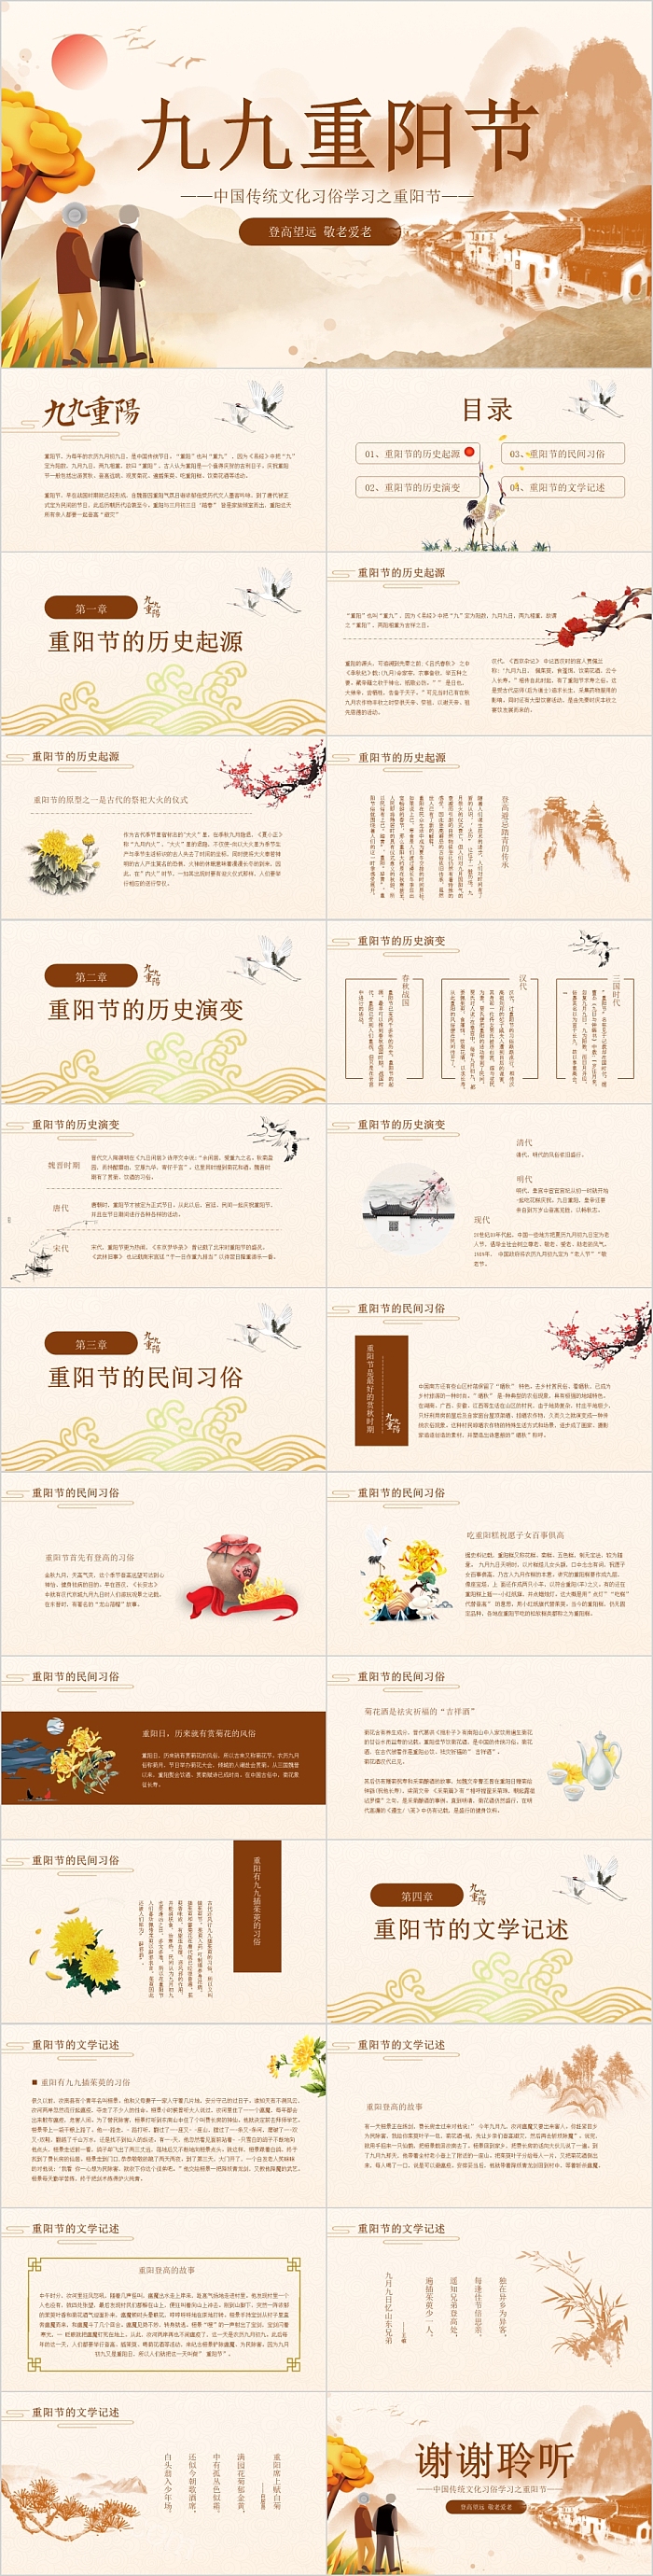 中国传统文化九九重阳节